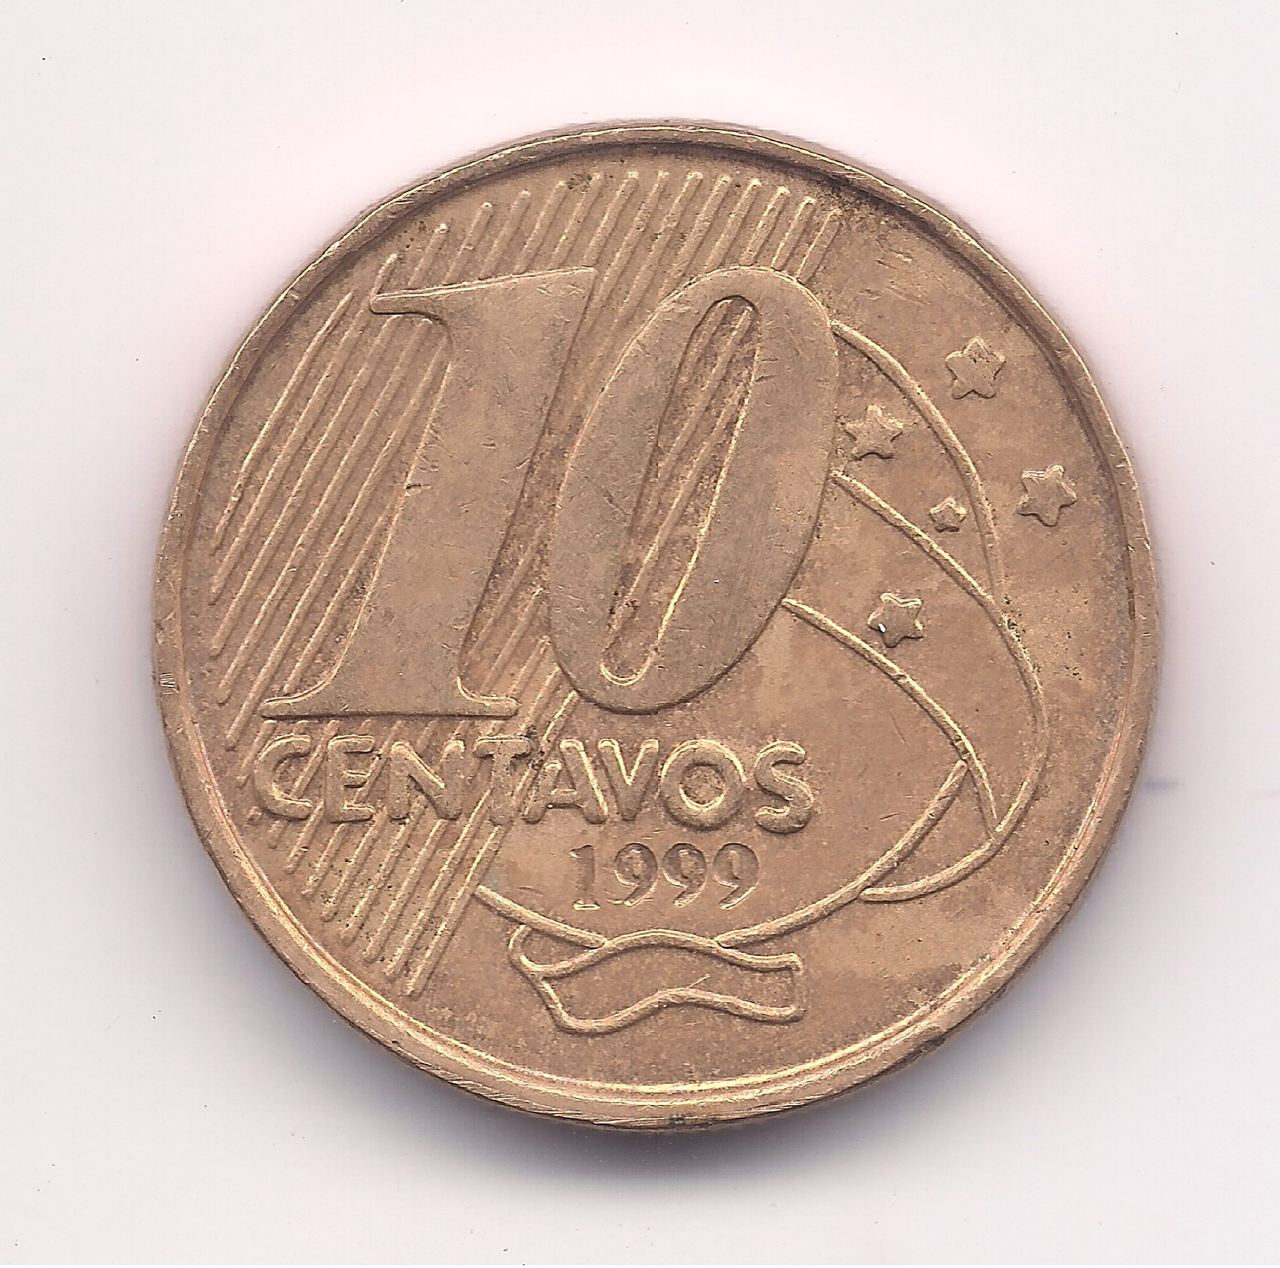 V486 - 10 Centavos 1999